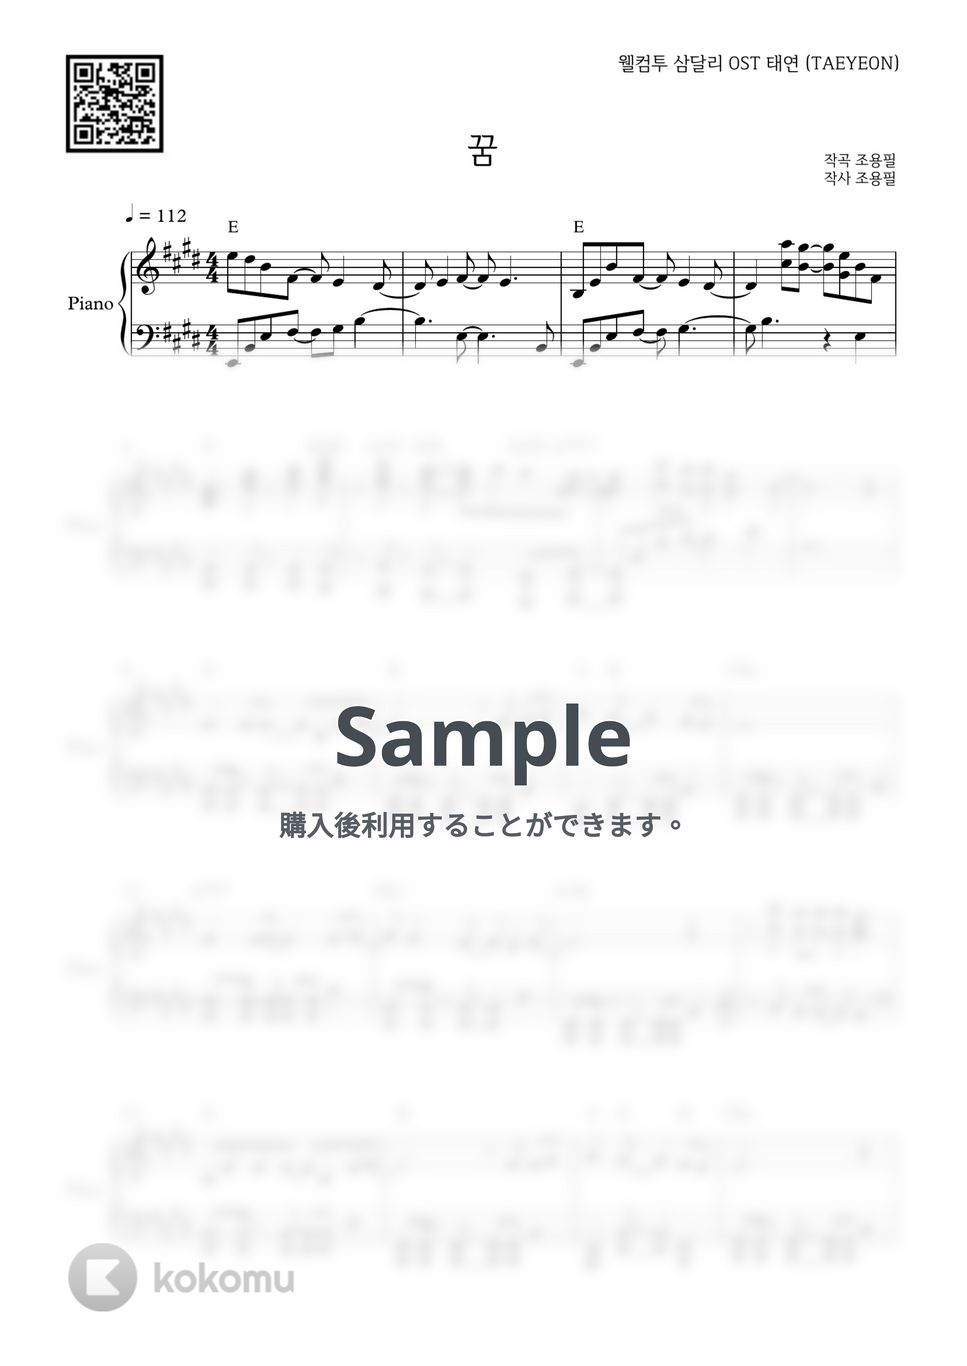 テヨン - Dream (Welcome to Samdal-ri OST) by PIANOiNU